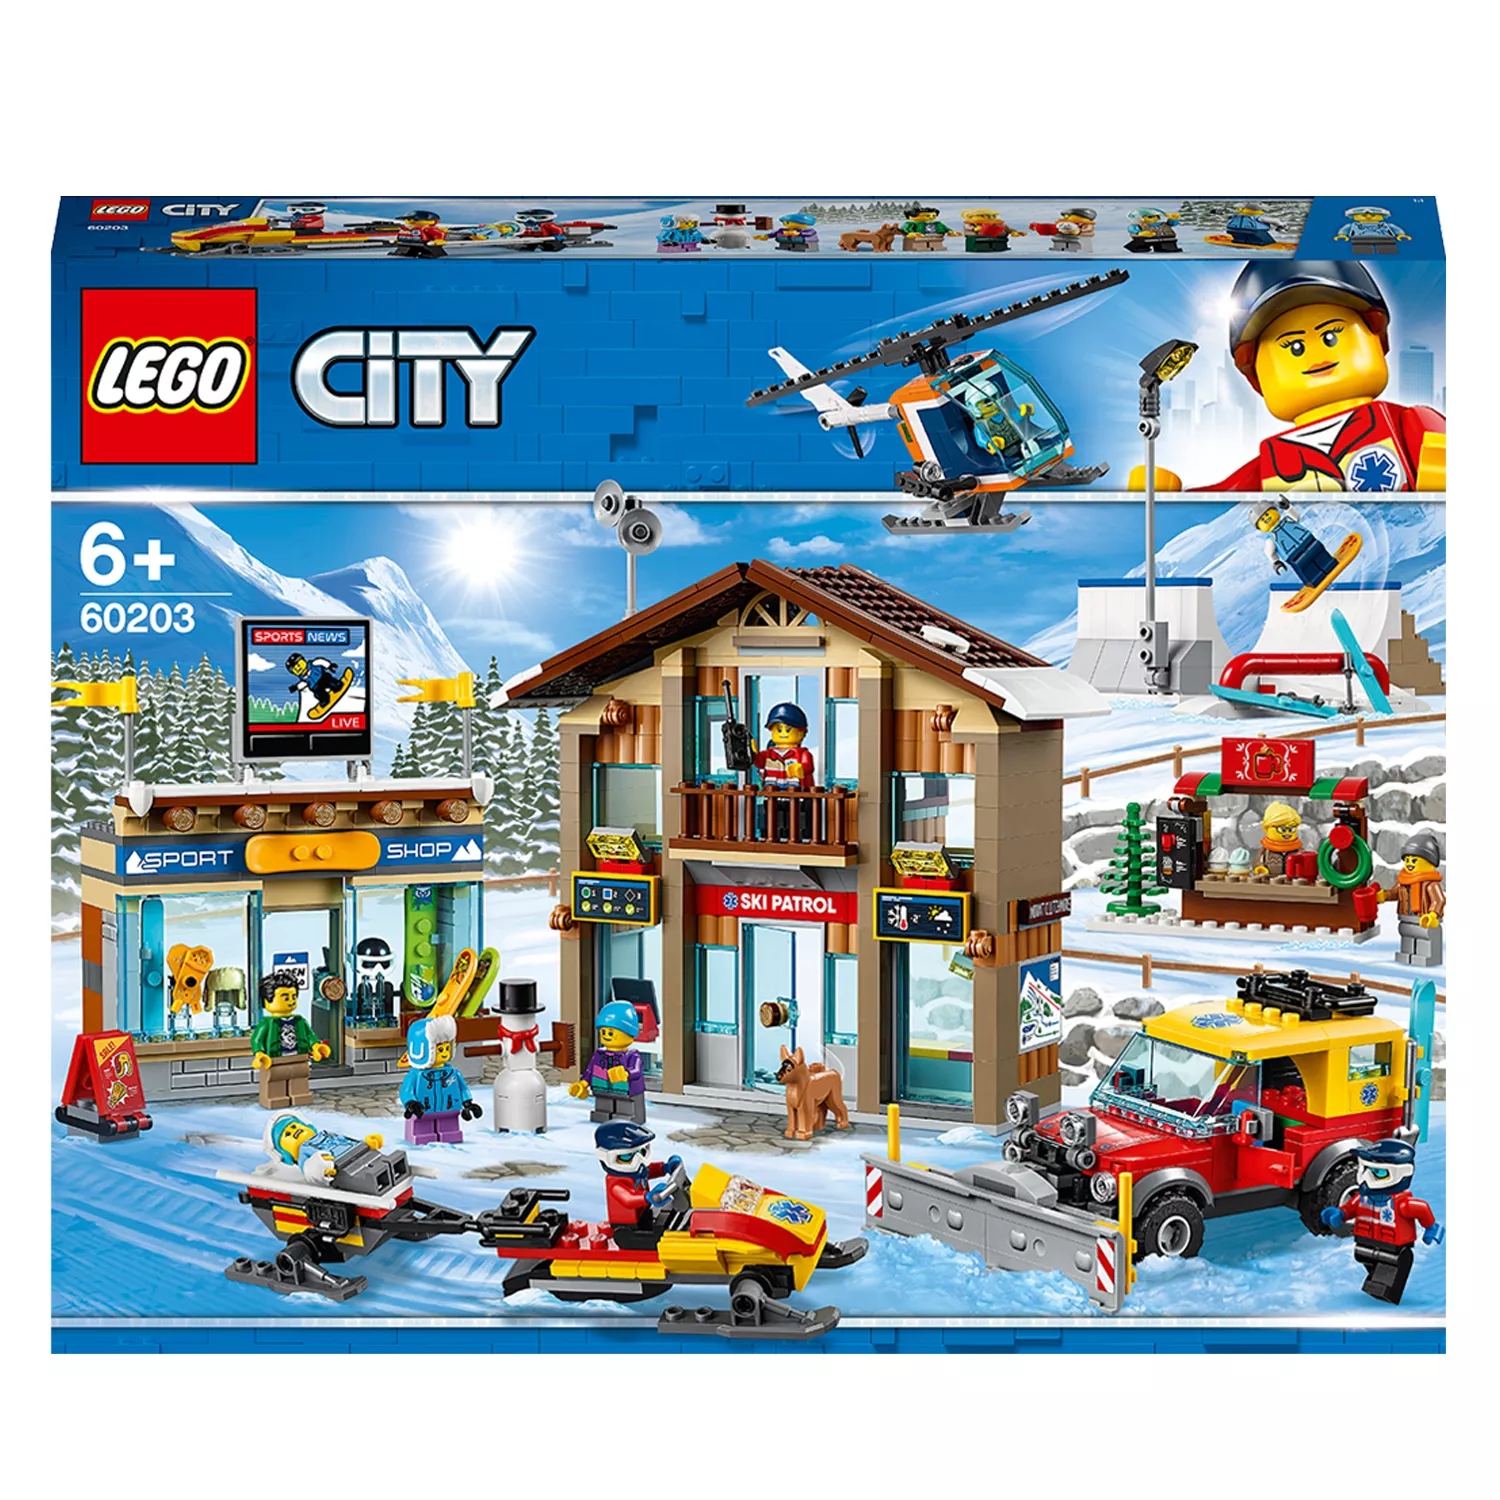 LEGO City Ski Resort